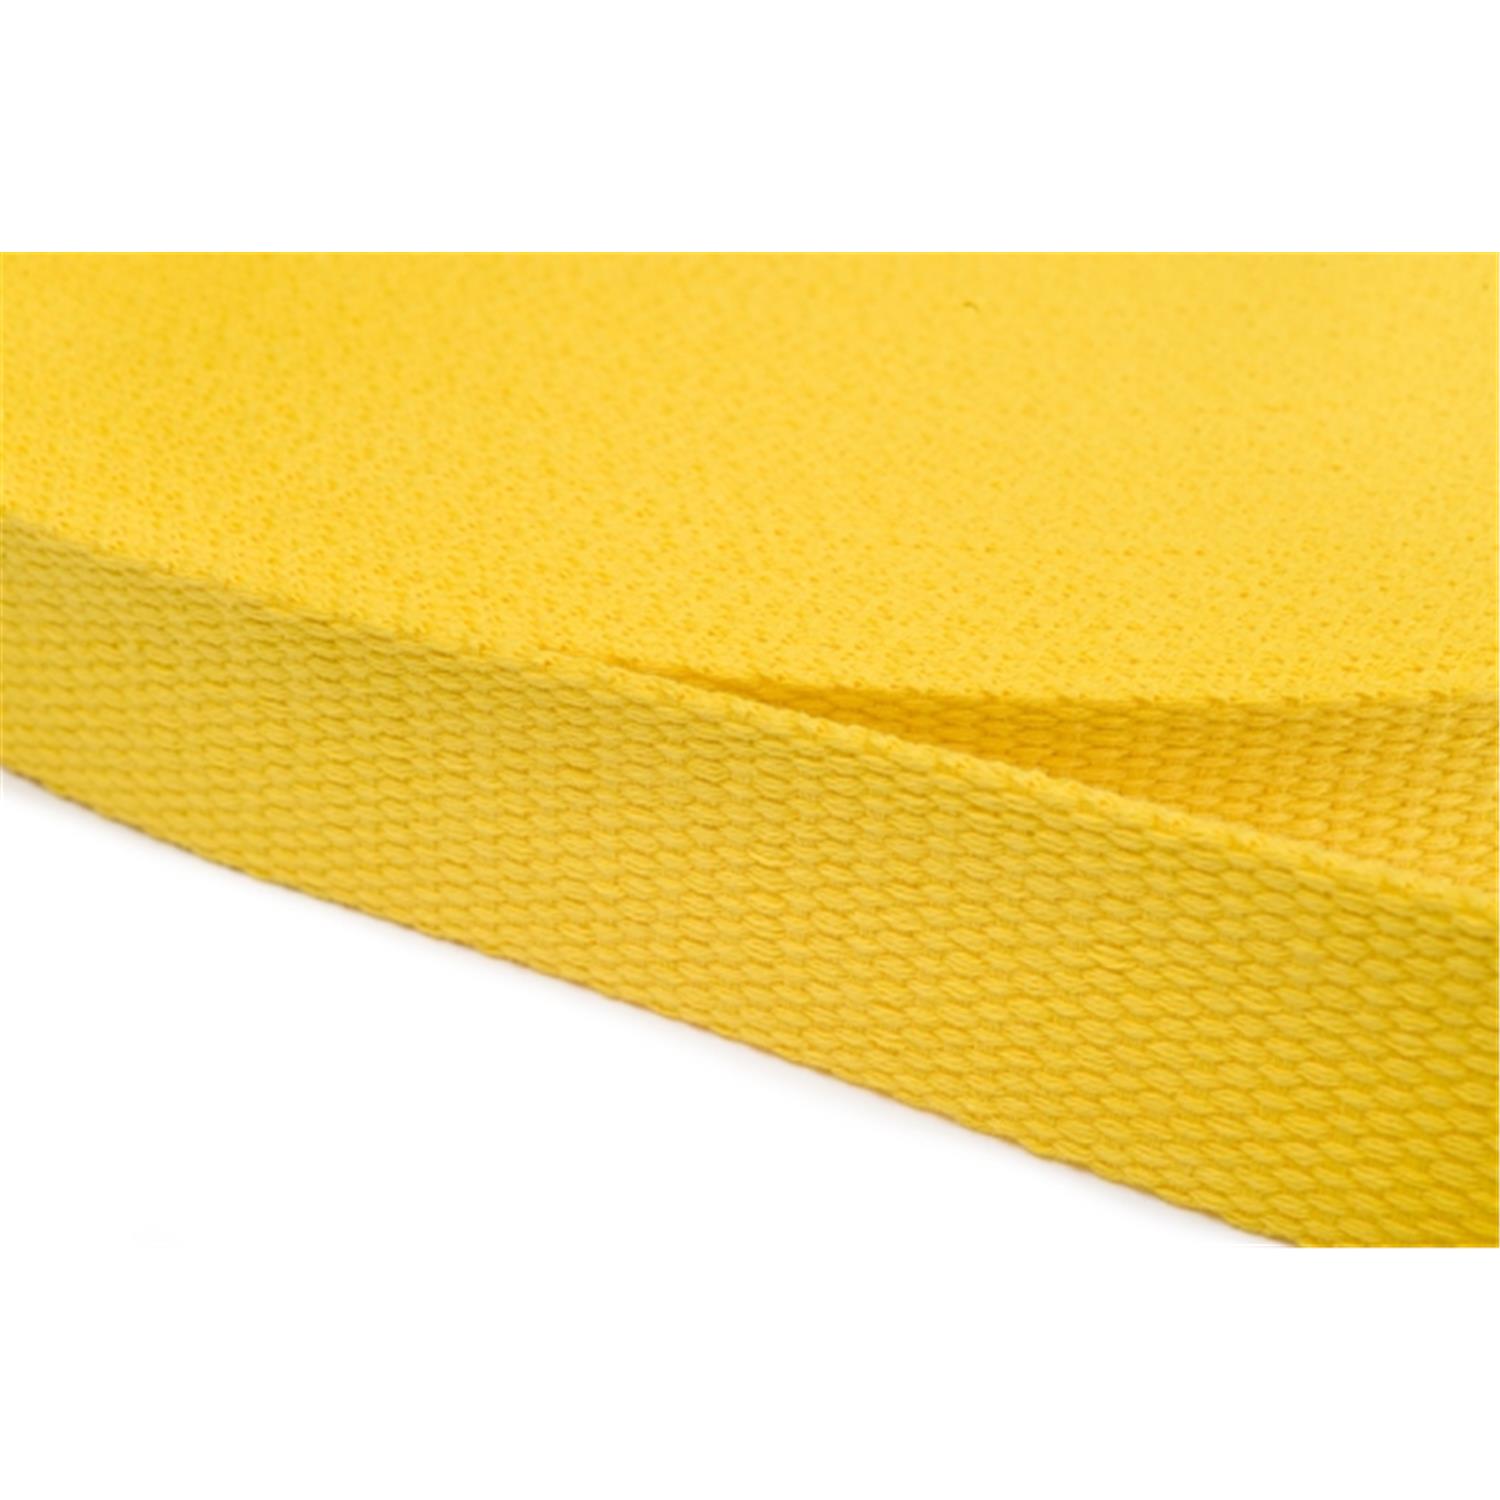 Gurtband aus Baumwolle 30mm in 20 Farben 05 - gelb 6 Meter